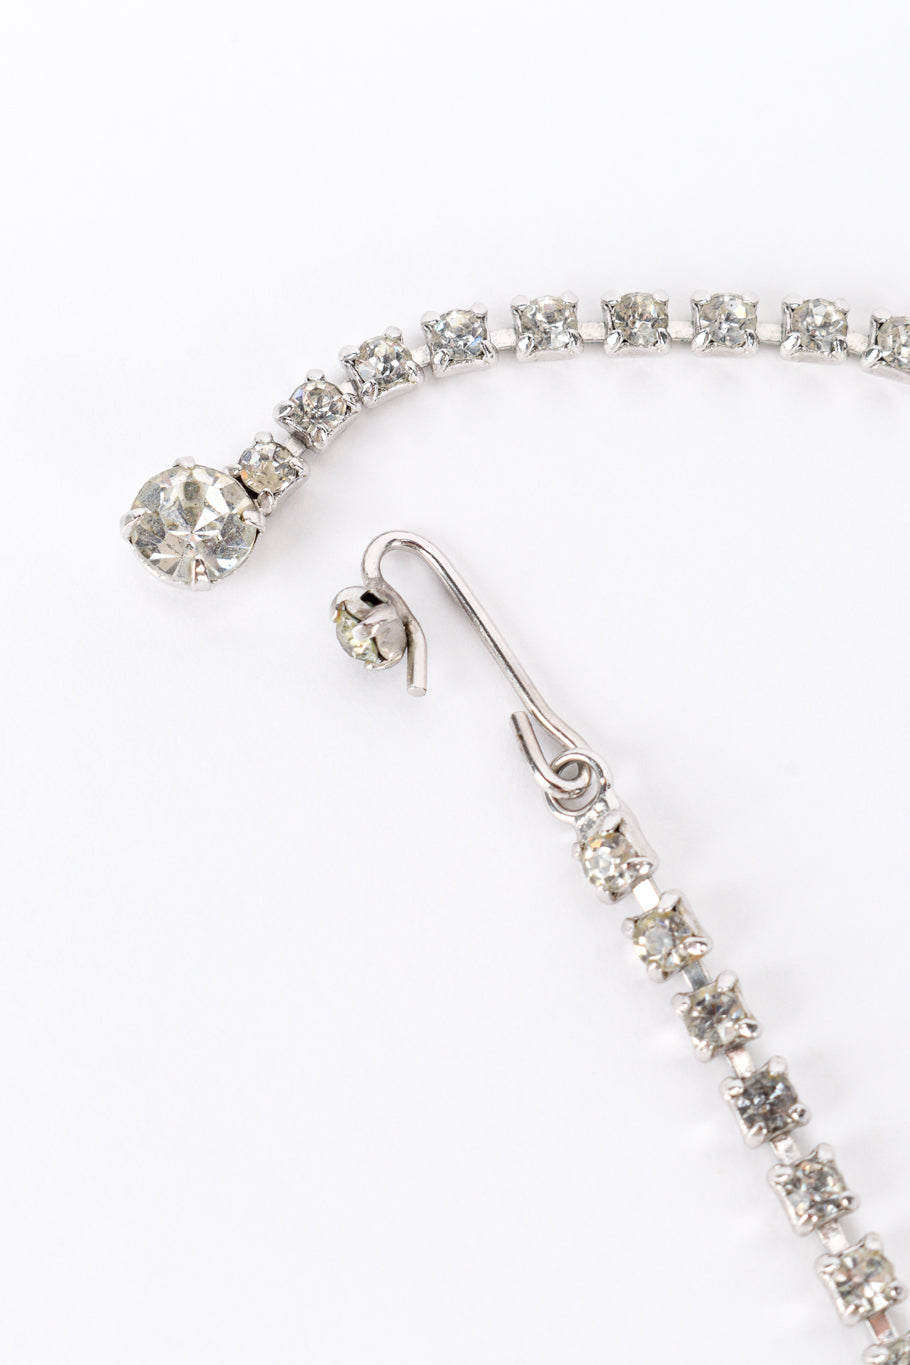 Vintage Pointed Crystal Bib Necklace hook closure @recess la